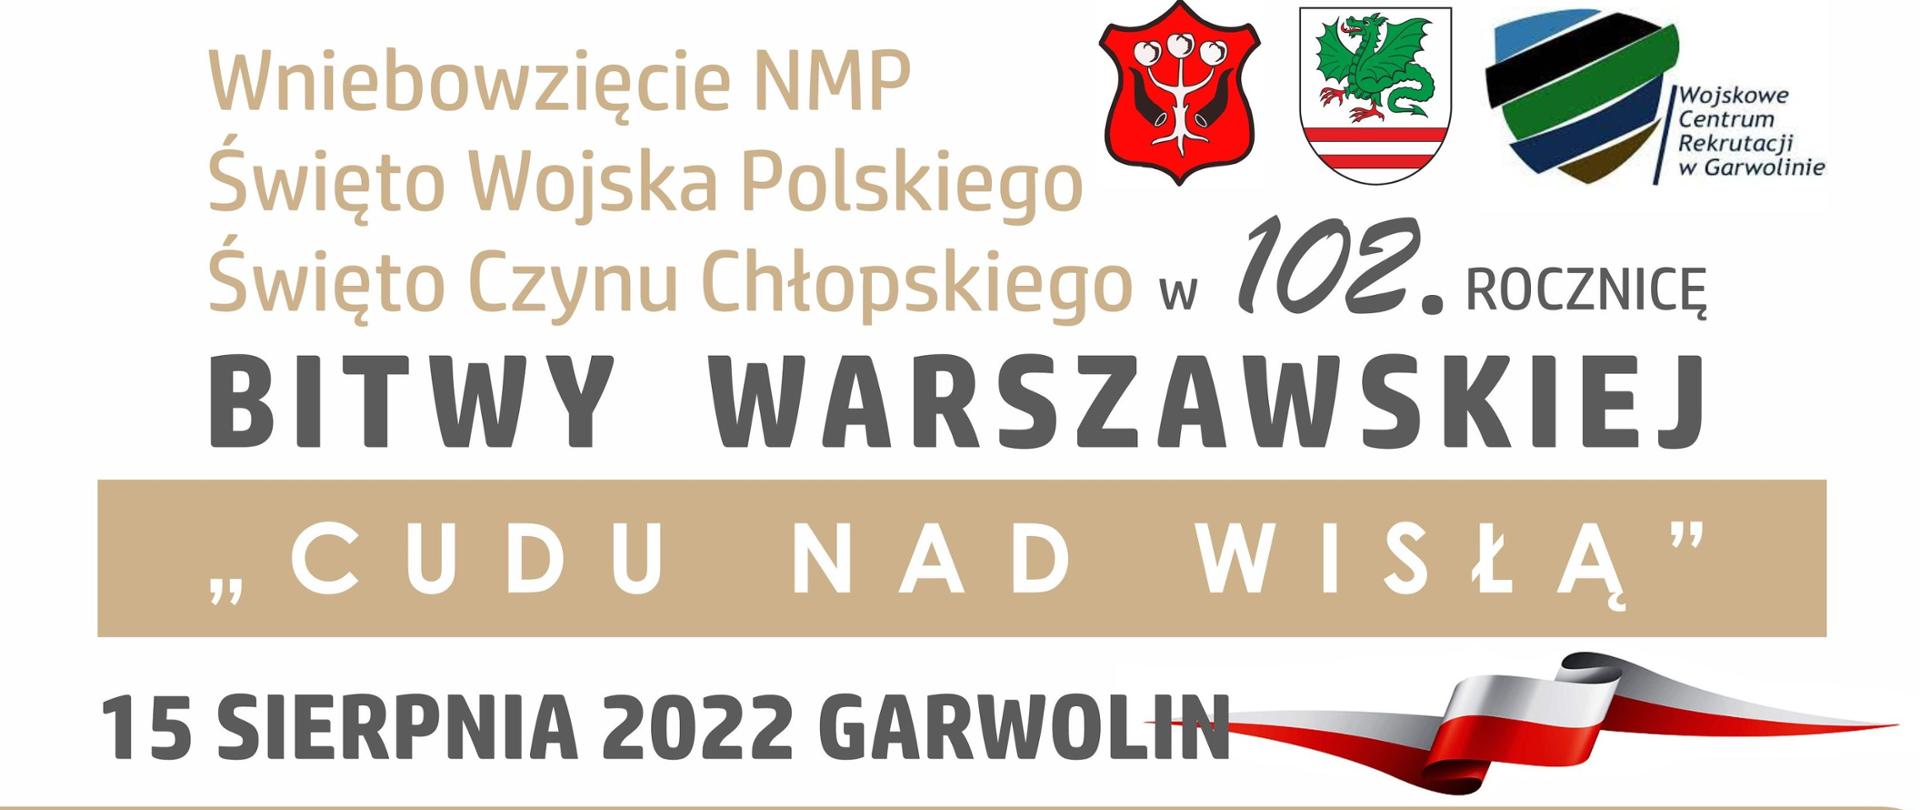 102 rocznica Bitwy warszawskiej - plakat